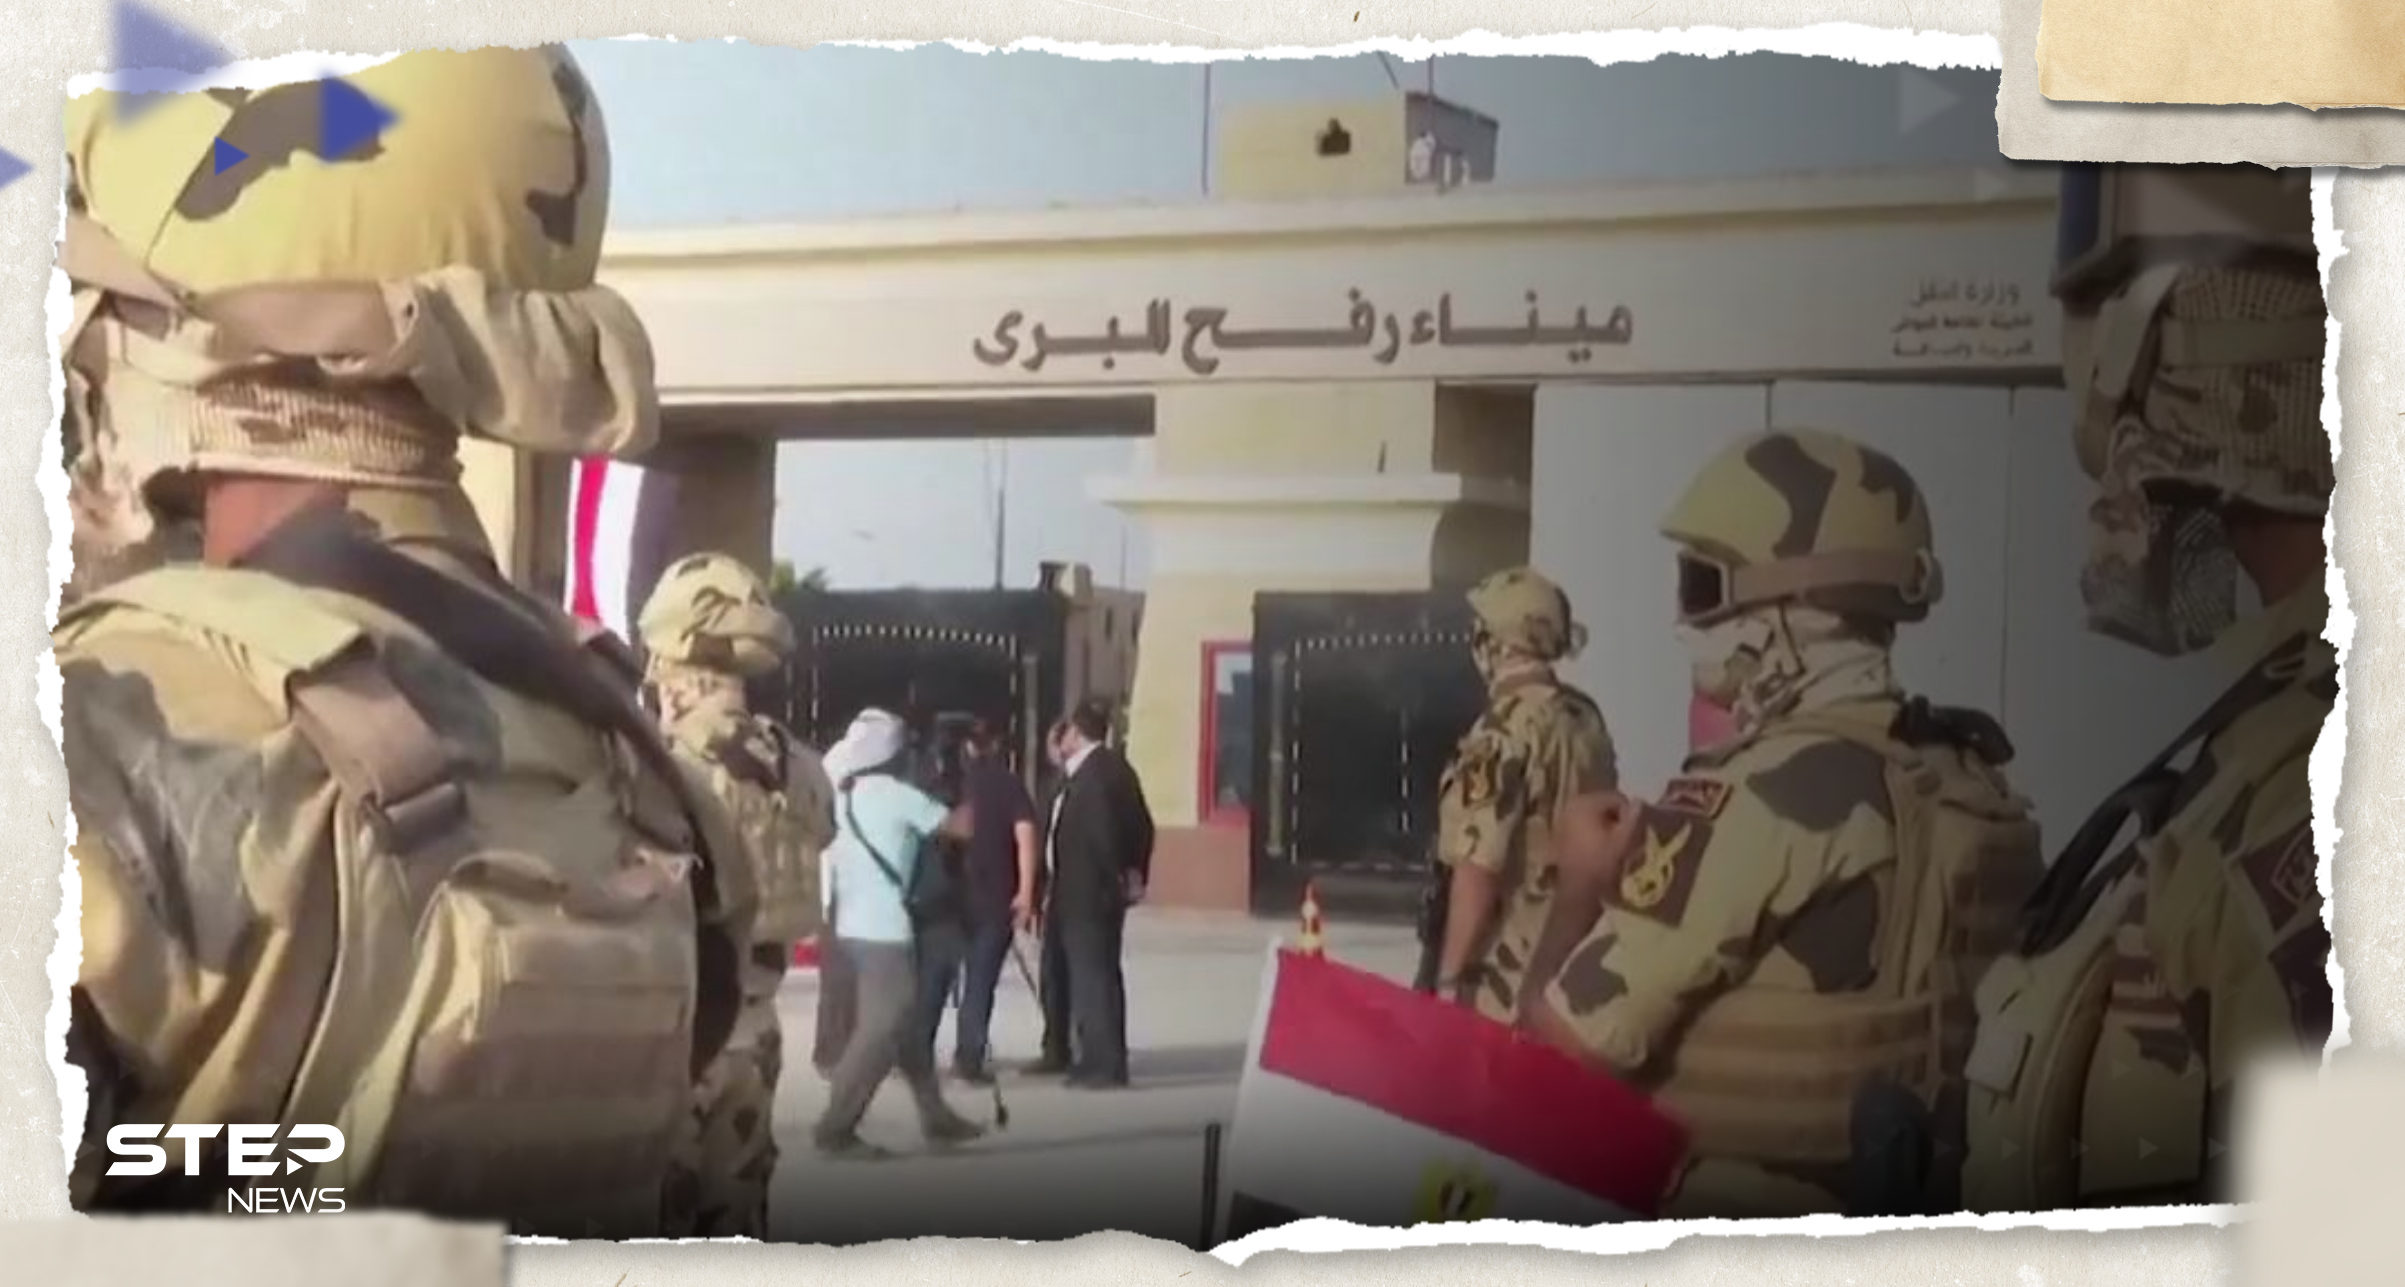 بالفيديو|| مصر تحرك آلياتها العسكرية قرب رفح وحديث عن اتفاق يتعلق بغزة ما بنوده؟